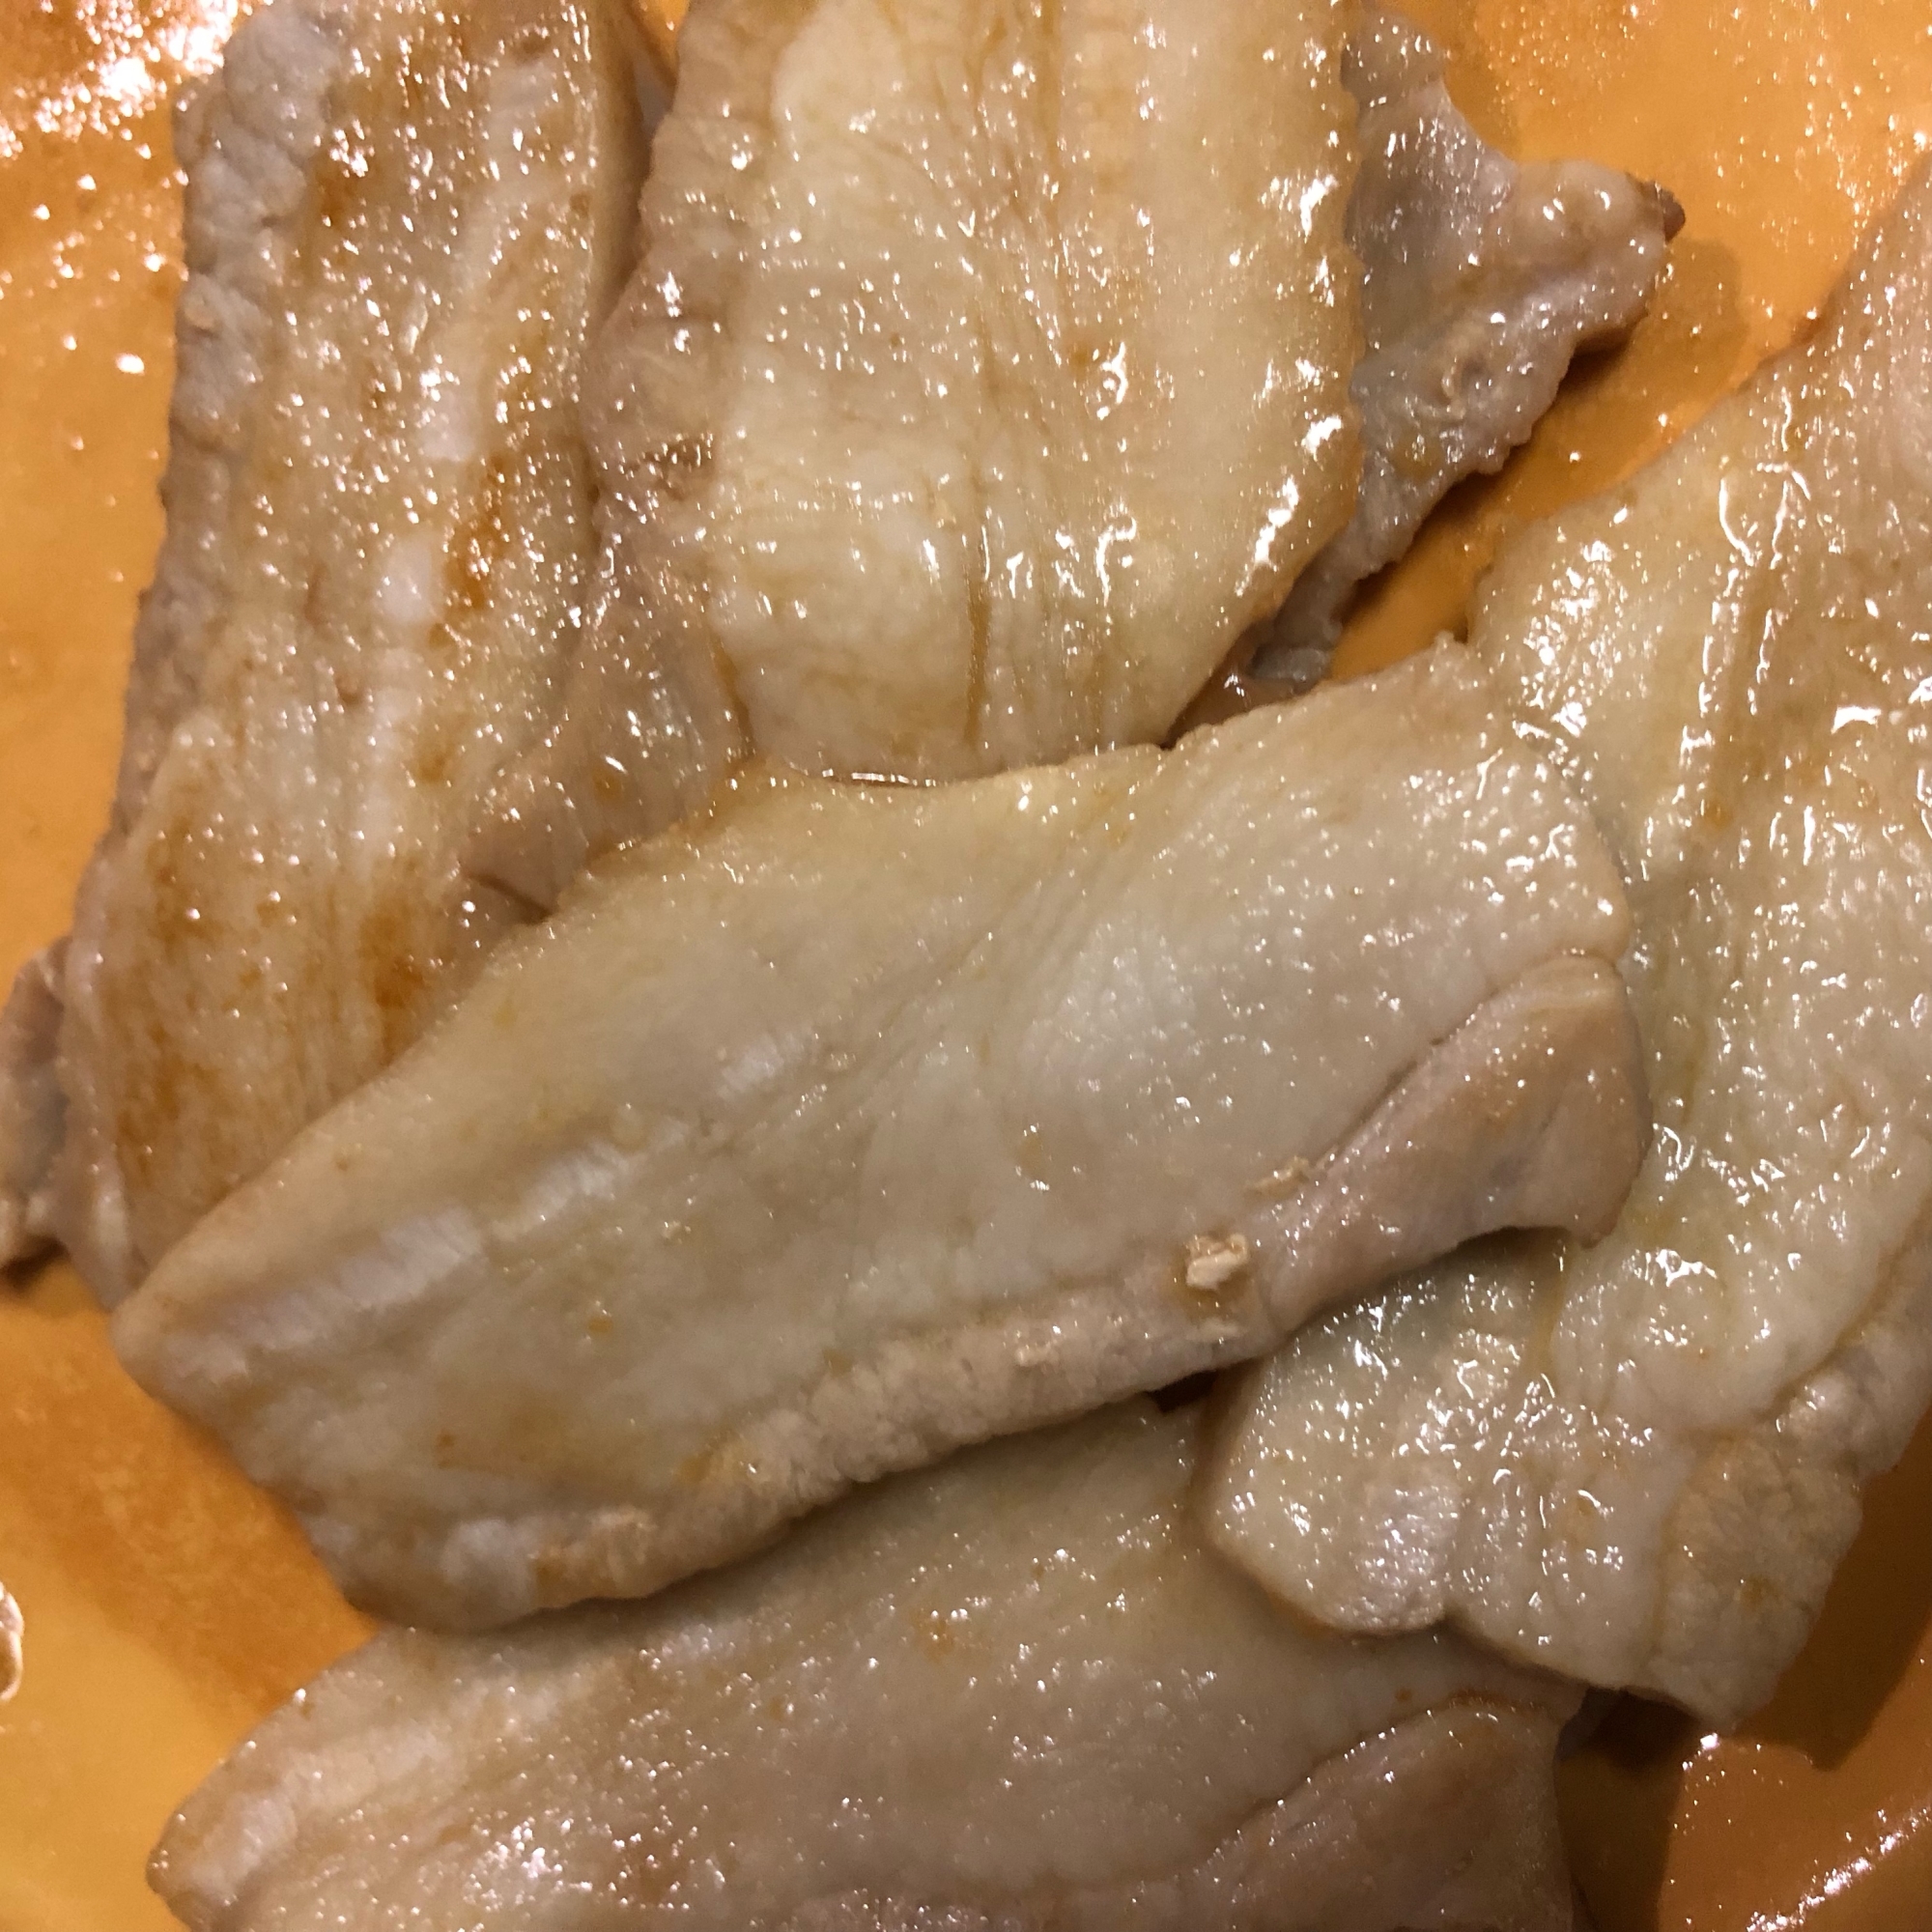 厚切りの豚バラ肉の生姜焼き